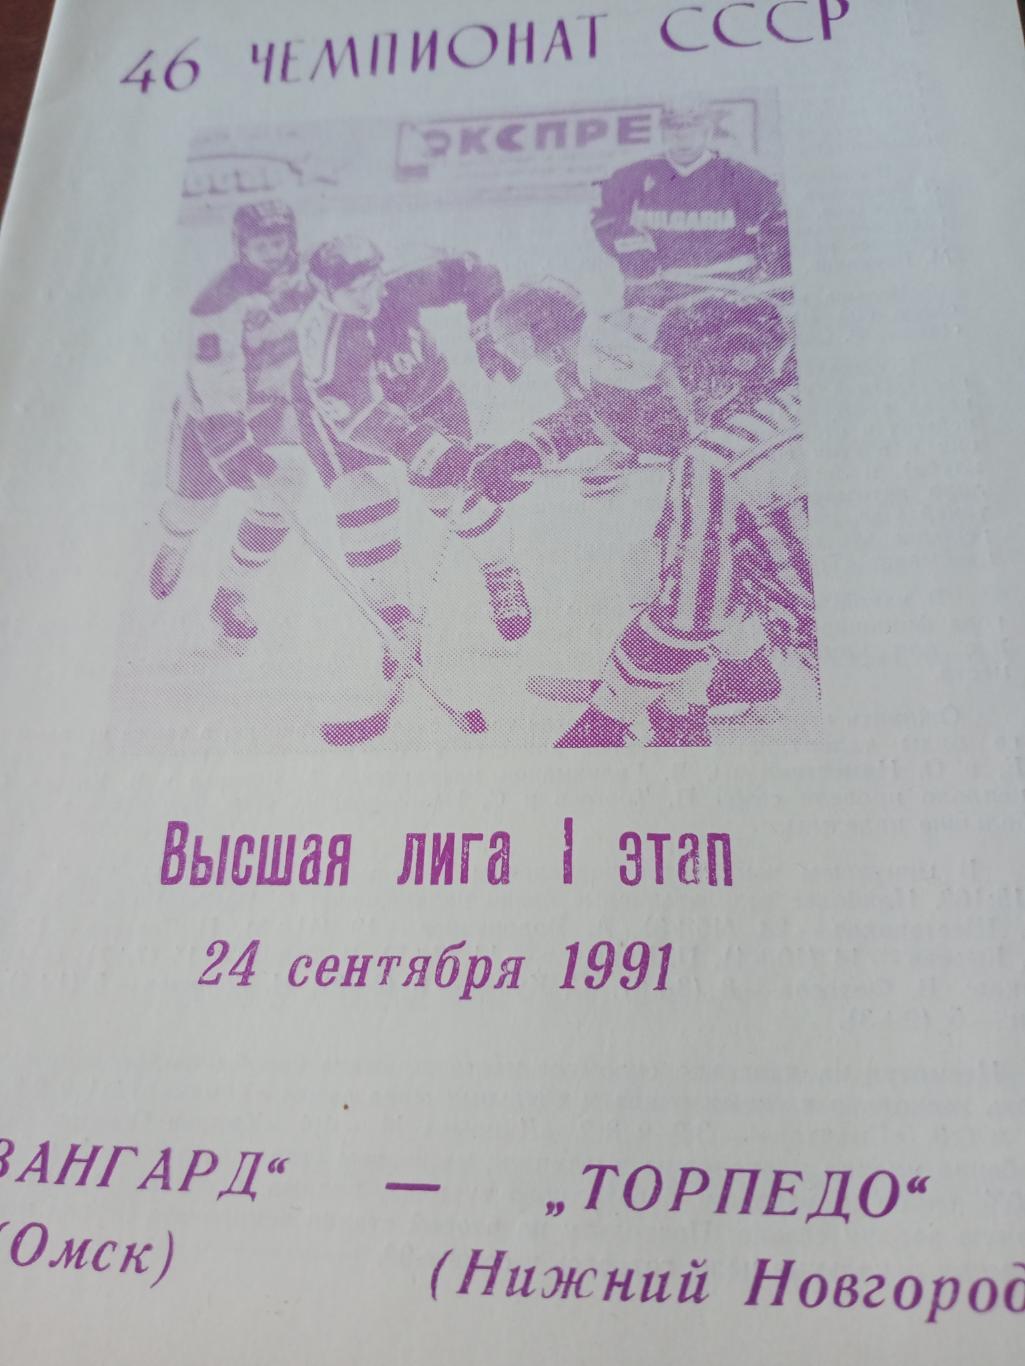 Авангард Омск - Торпедо Нижний Новгород. 24 сентября 1991 год